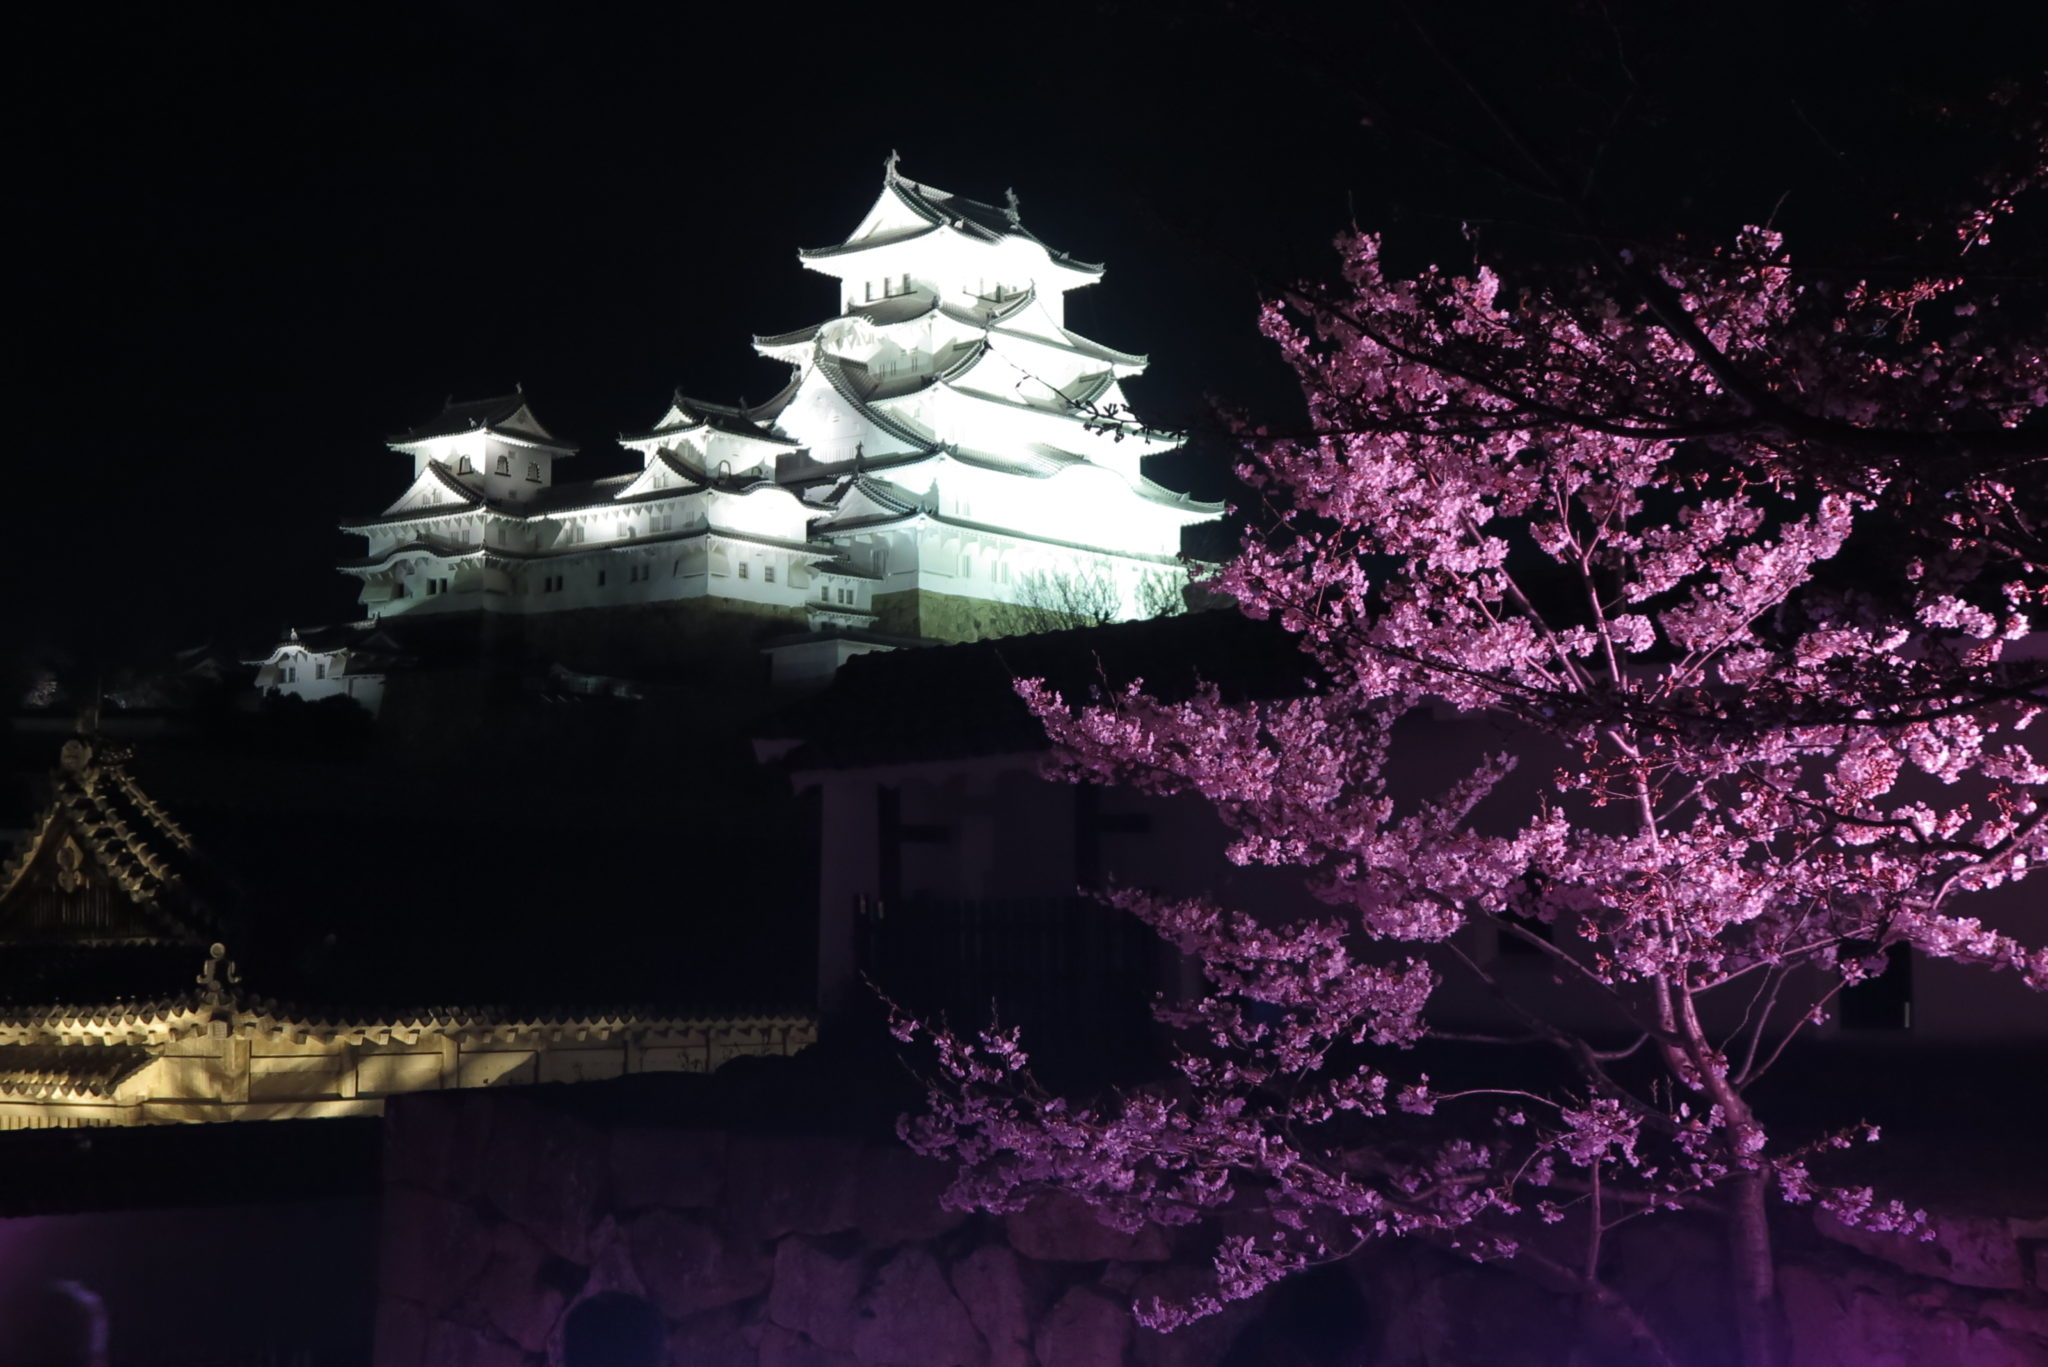 姫路城の夜桜会の様子 今年はプロジェクションマッピングがさらにすごかった 姫路の種